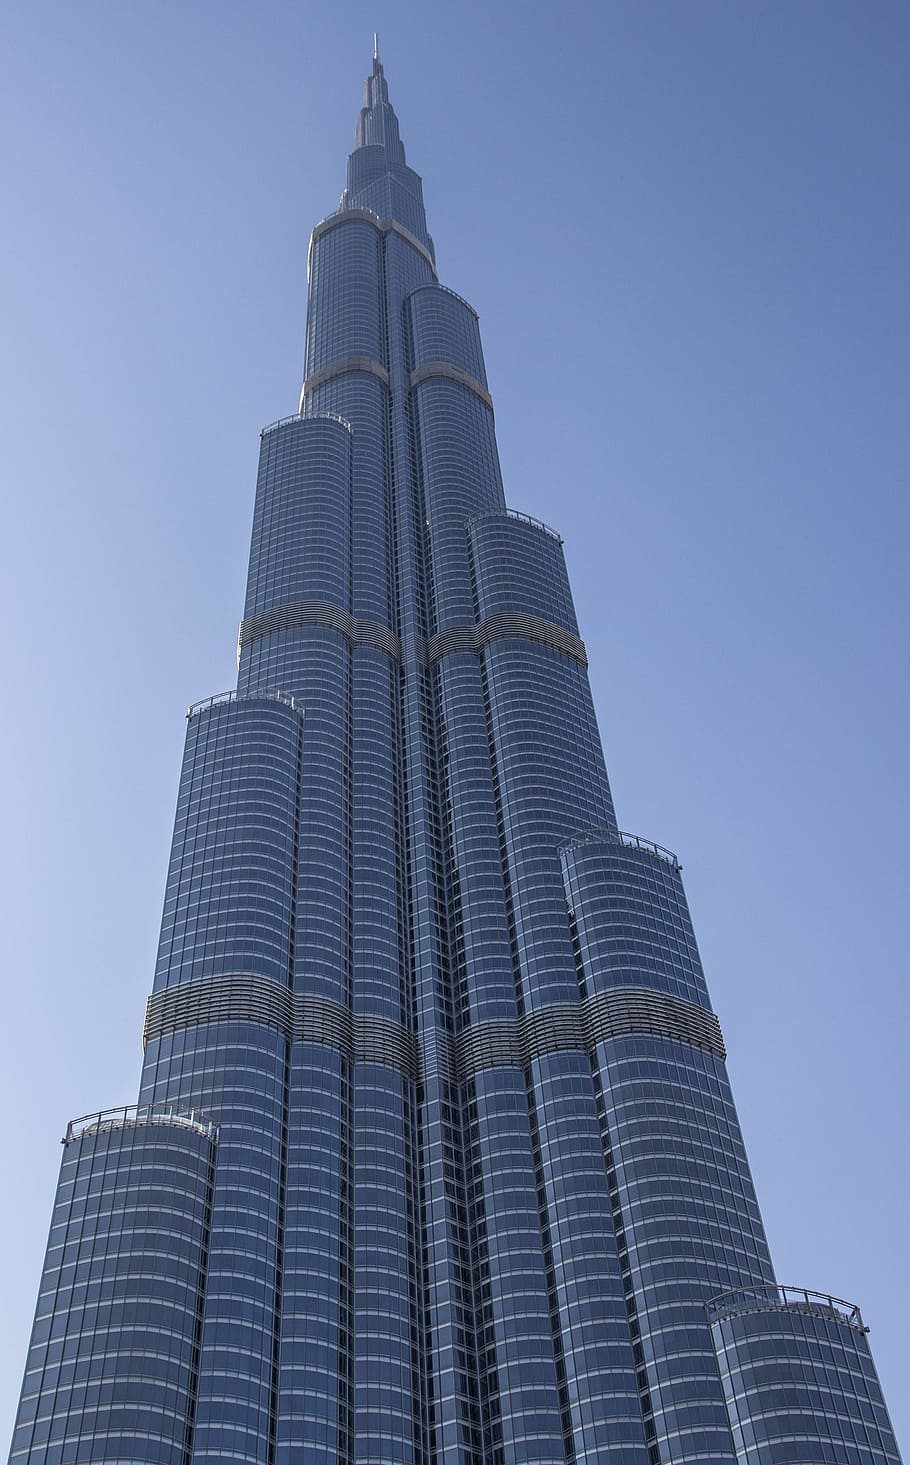 rendah, sudut pandang, bangunan dinding gorden, siang hari, burj khalifa, bangunan tertinggi di dunia, dubai, pencakar langit, u a e, kota